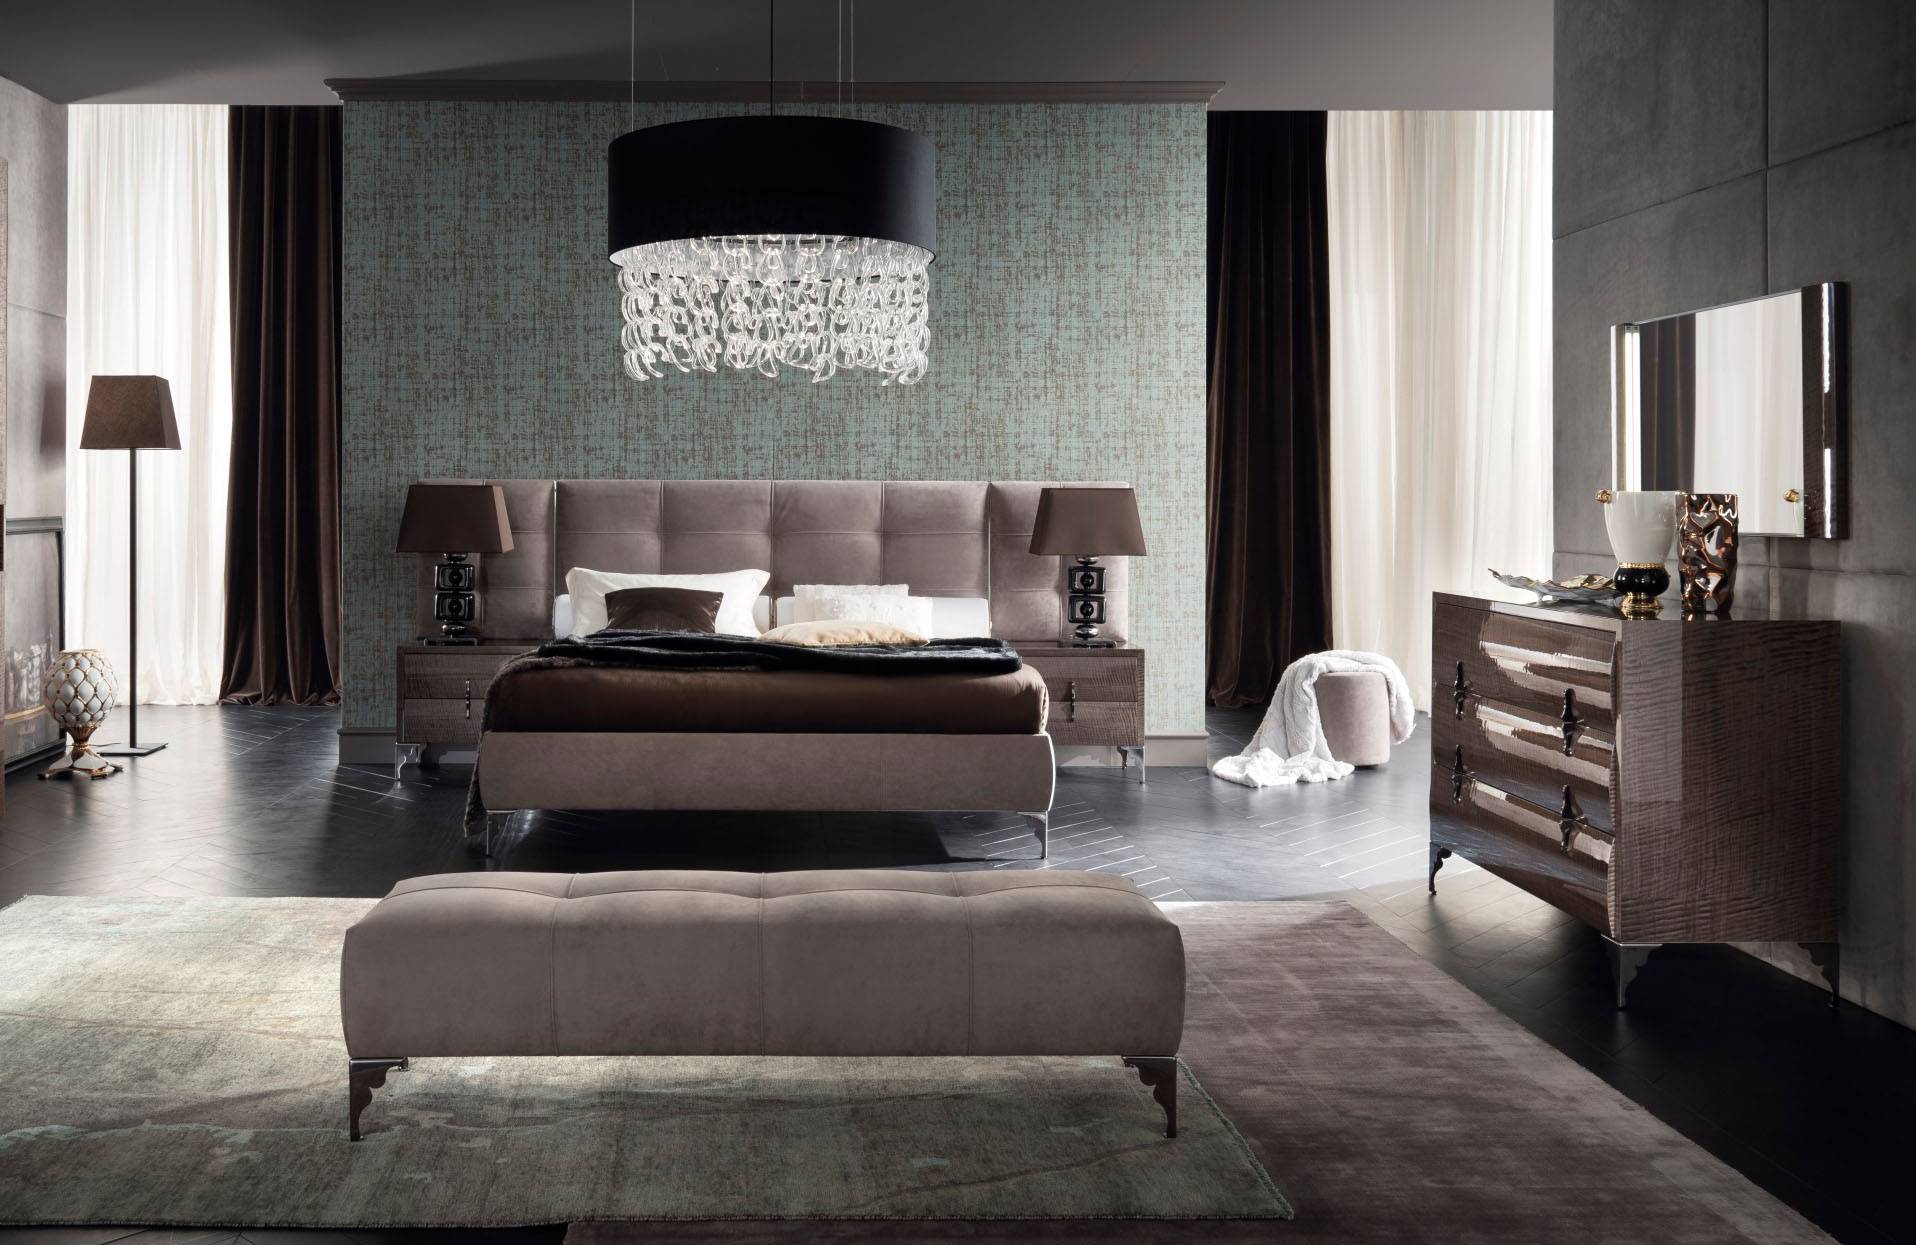 modern leather bedroom furniture set